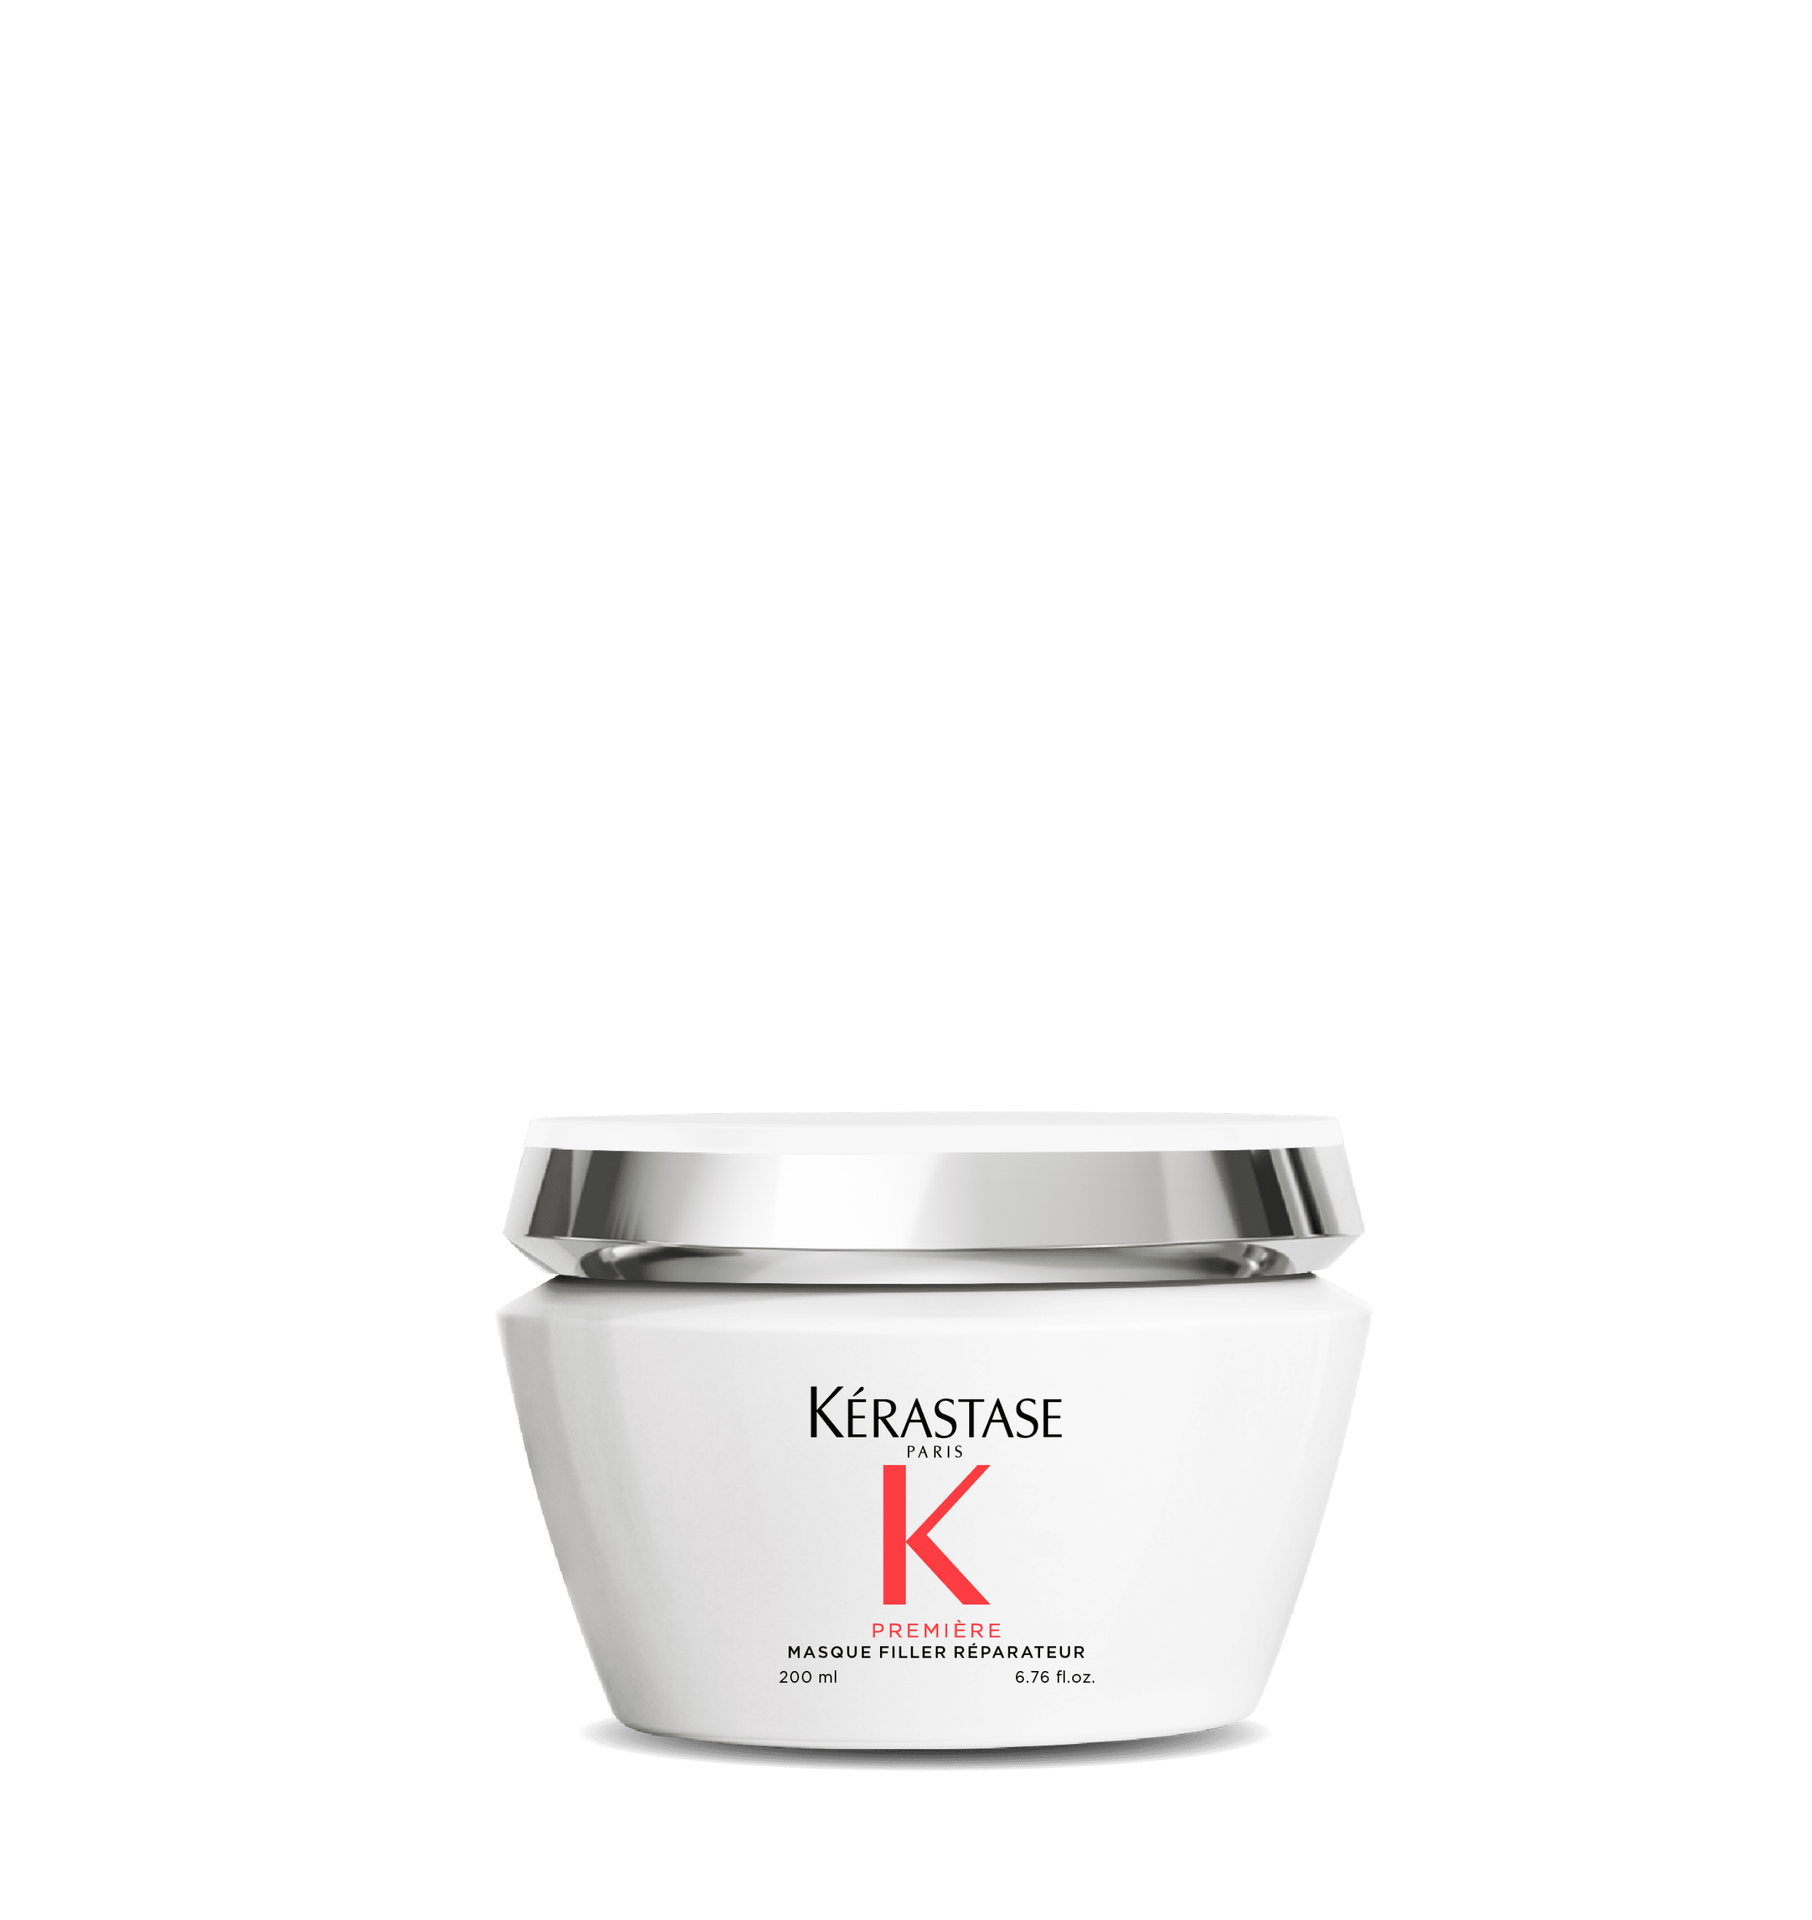 Kerastase Premiere Masque Filler Reparateur Маска-філер для зменшення ламкості та відновлення всіх типів пошкодженого волосся